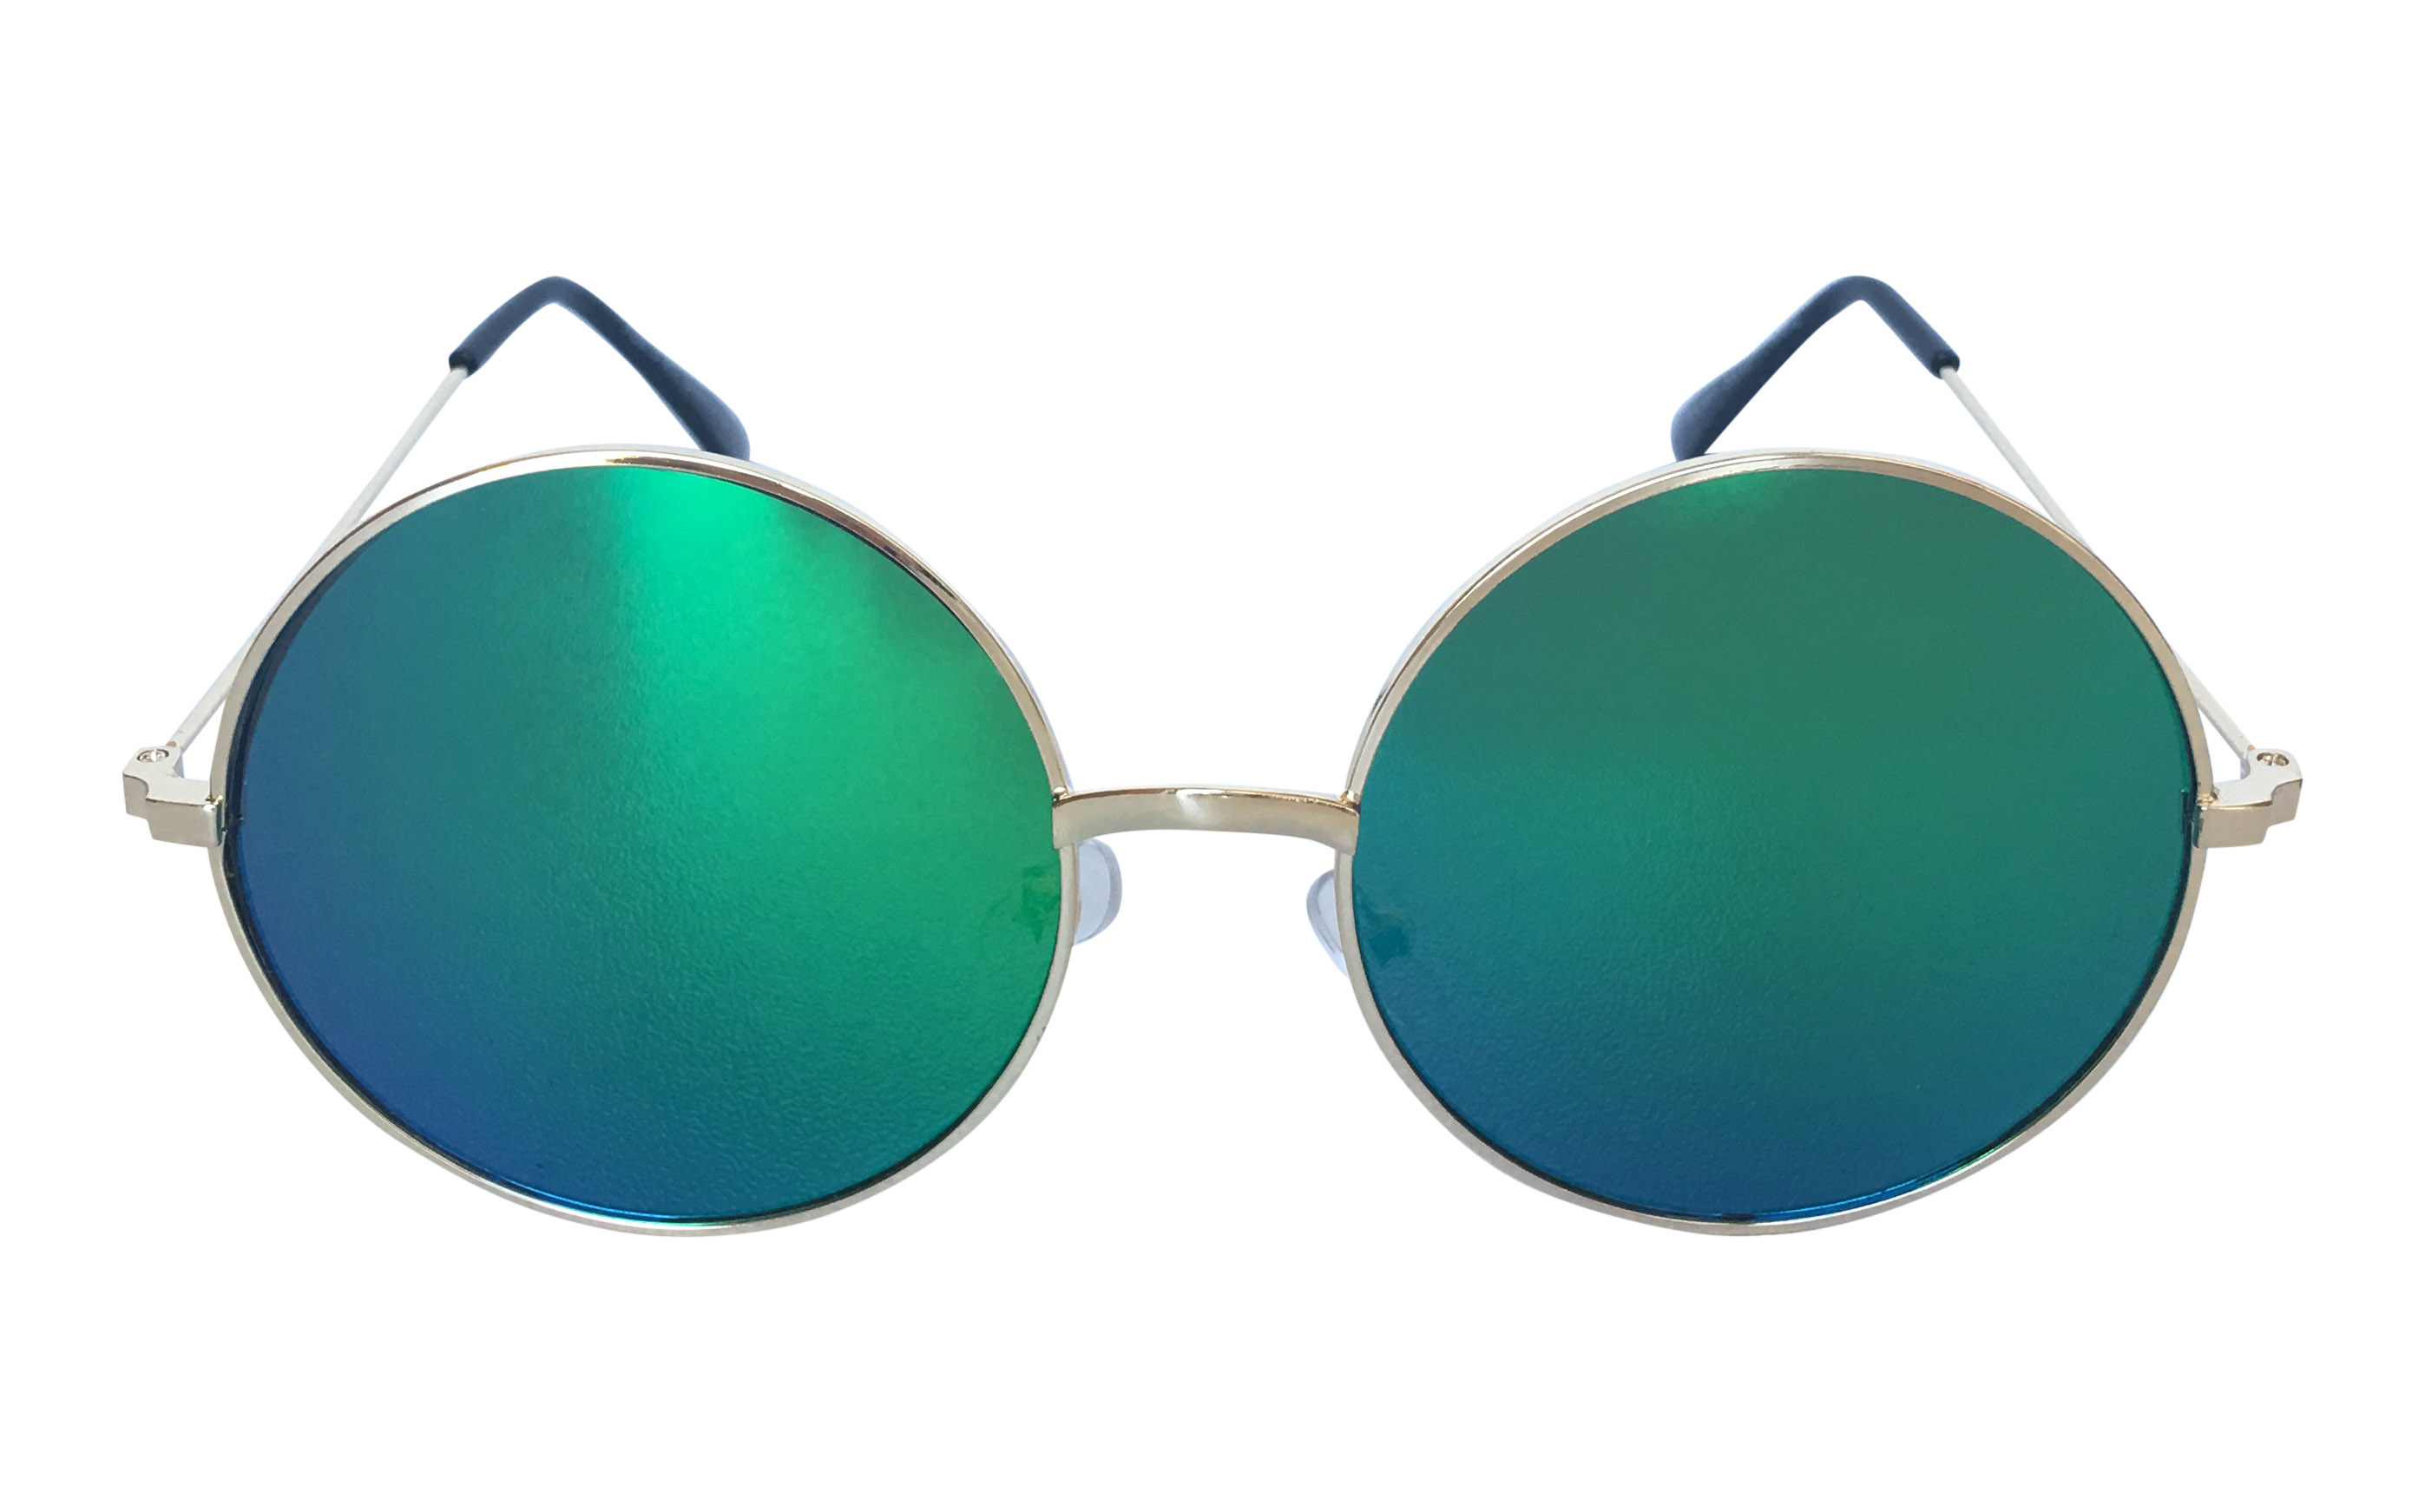 Guldfarvet rund solbrille med flade blå-grønne linser - Design nr. s3308